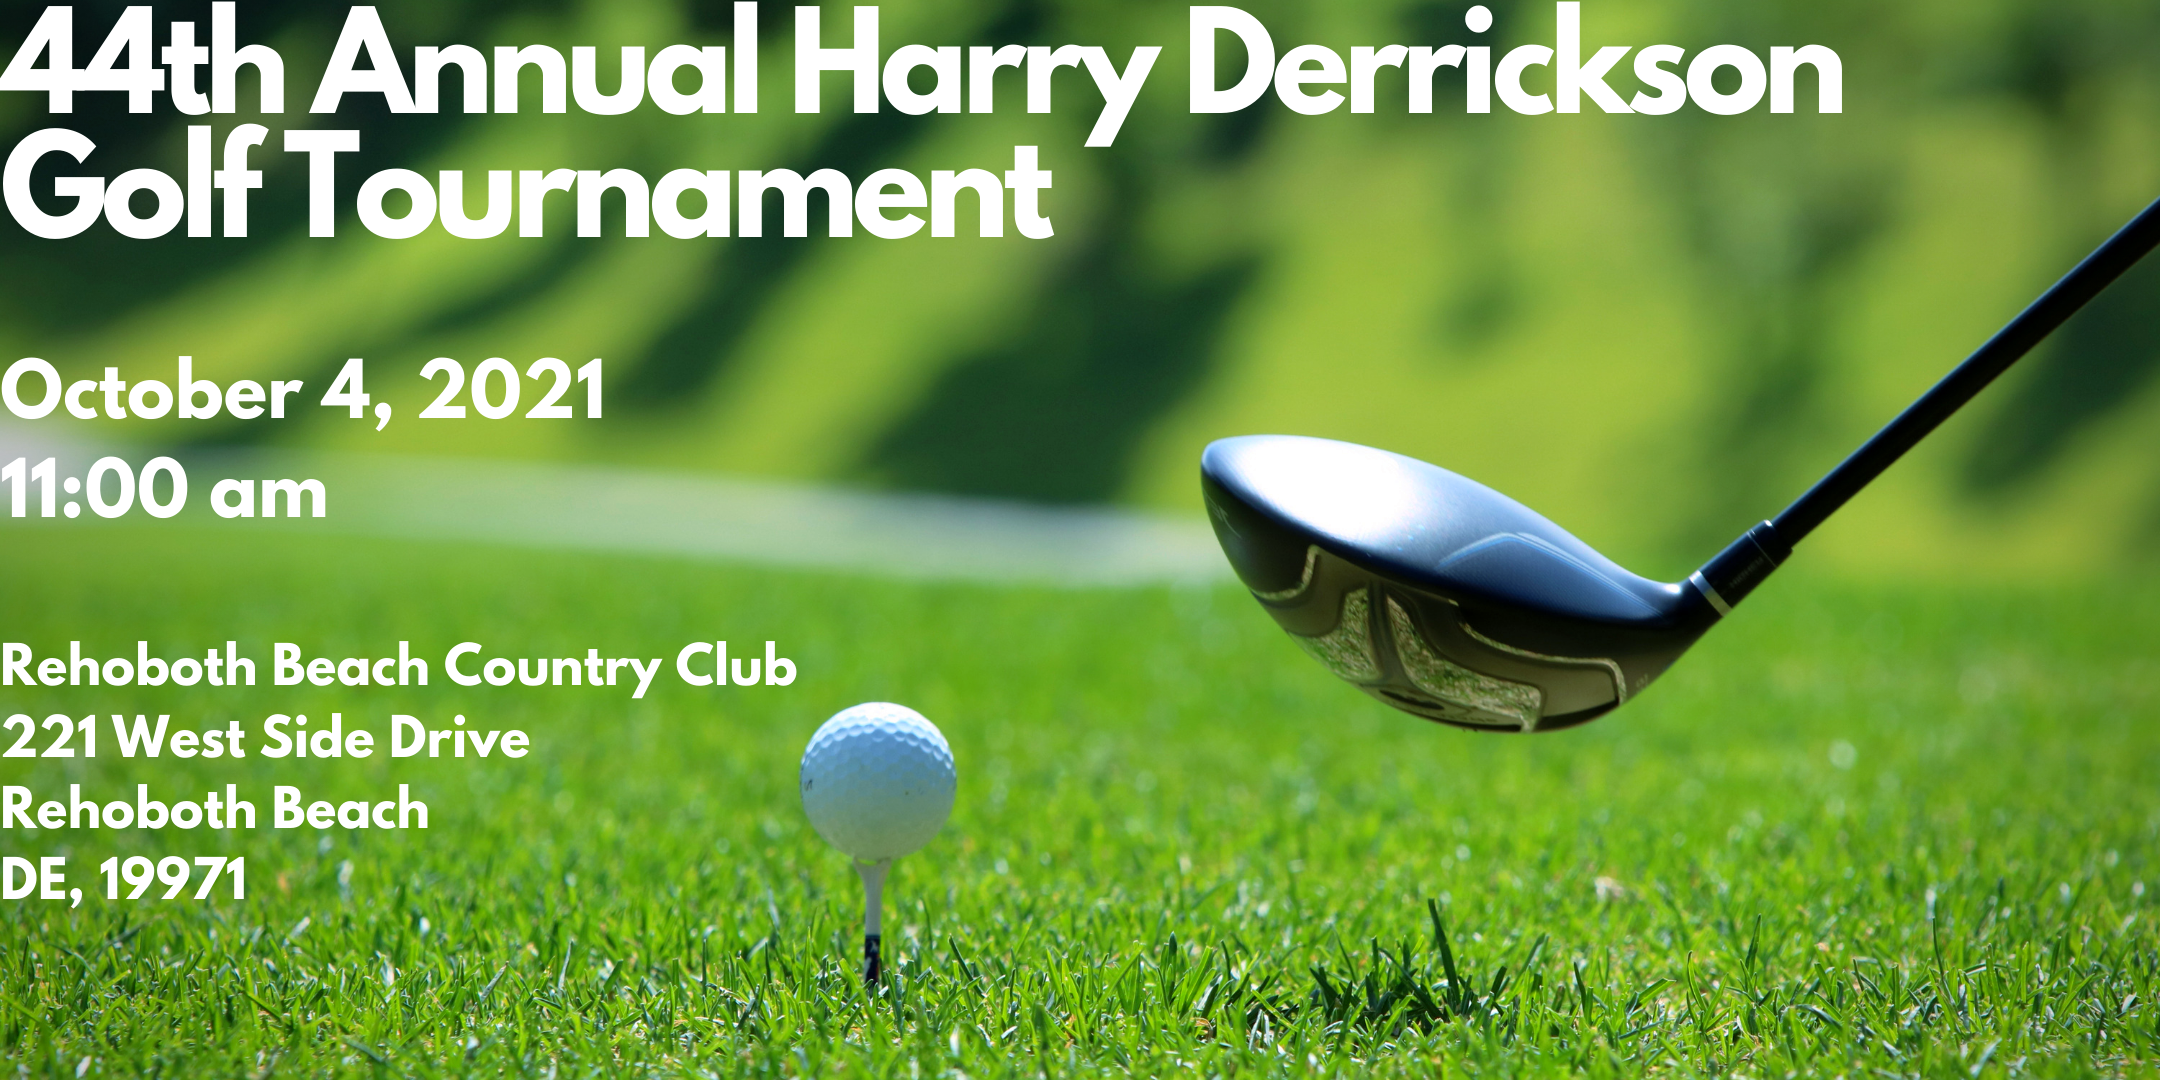 44th Annual Harry Derrickson Golf Tournament